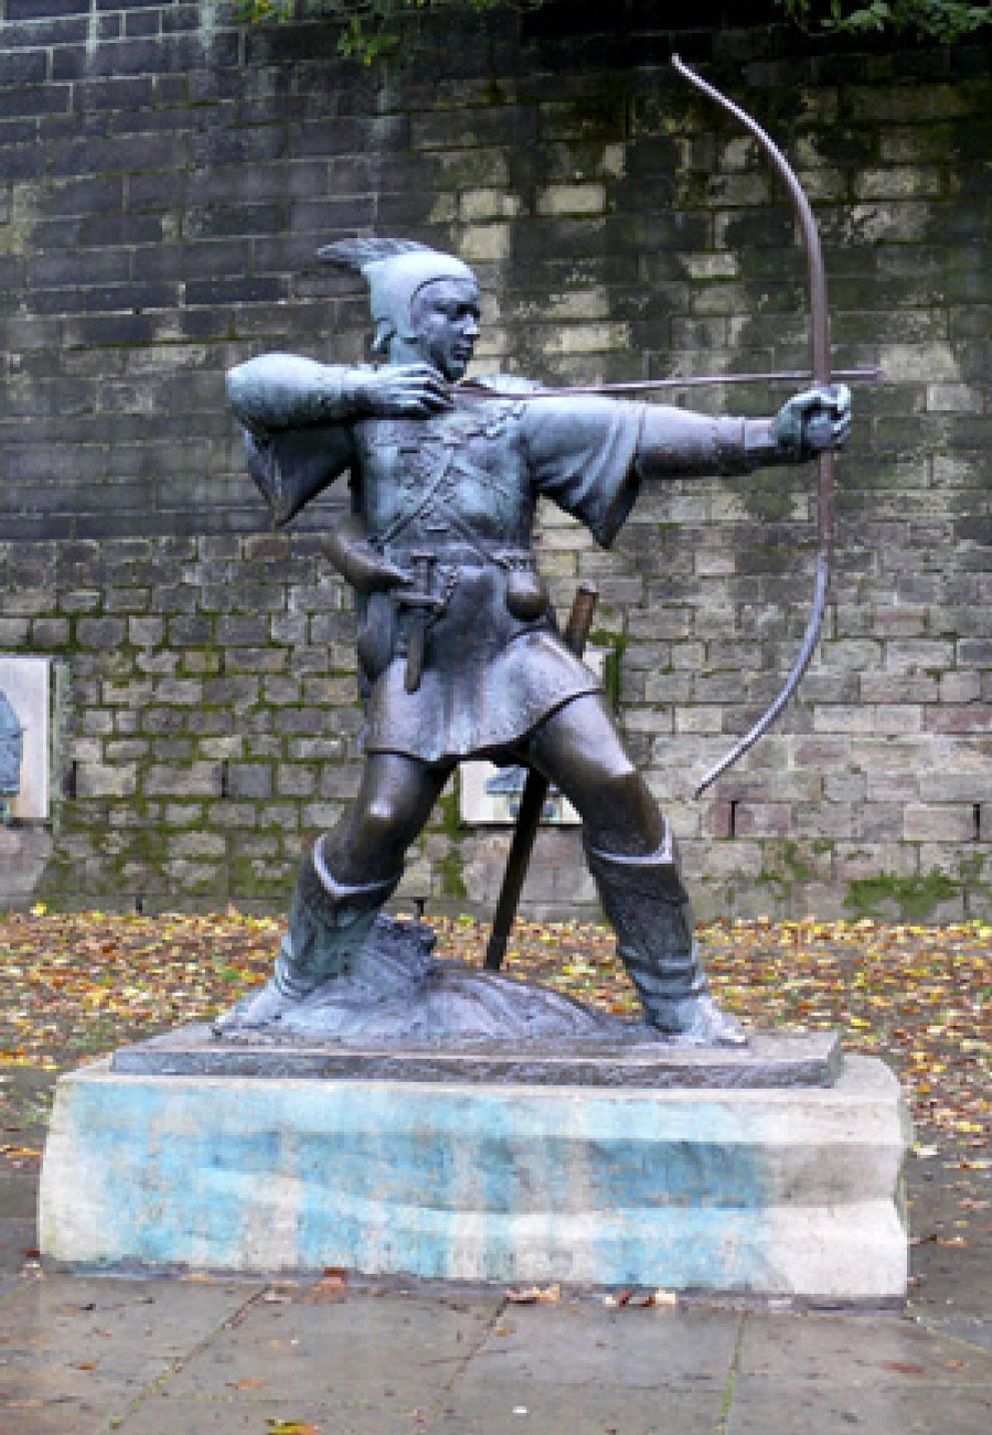 Foto: Robin Hood ya tiene competencia en Nottingham